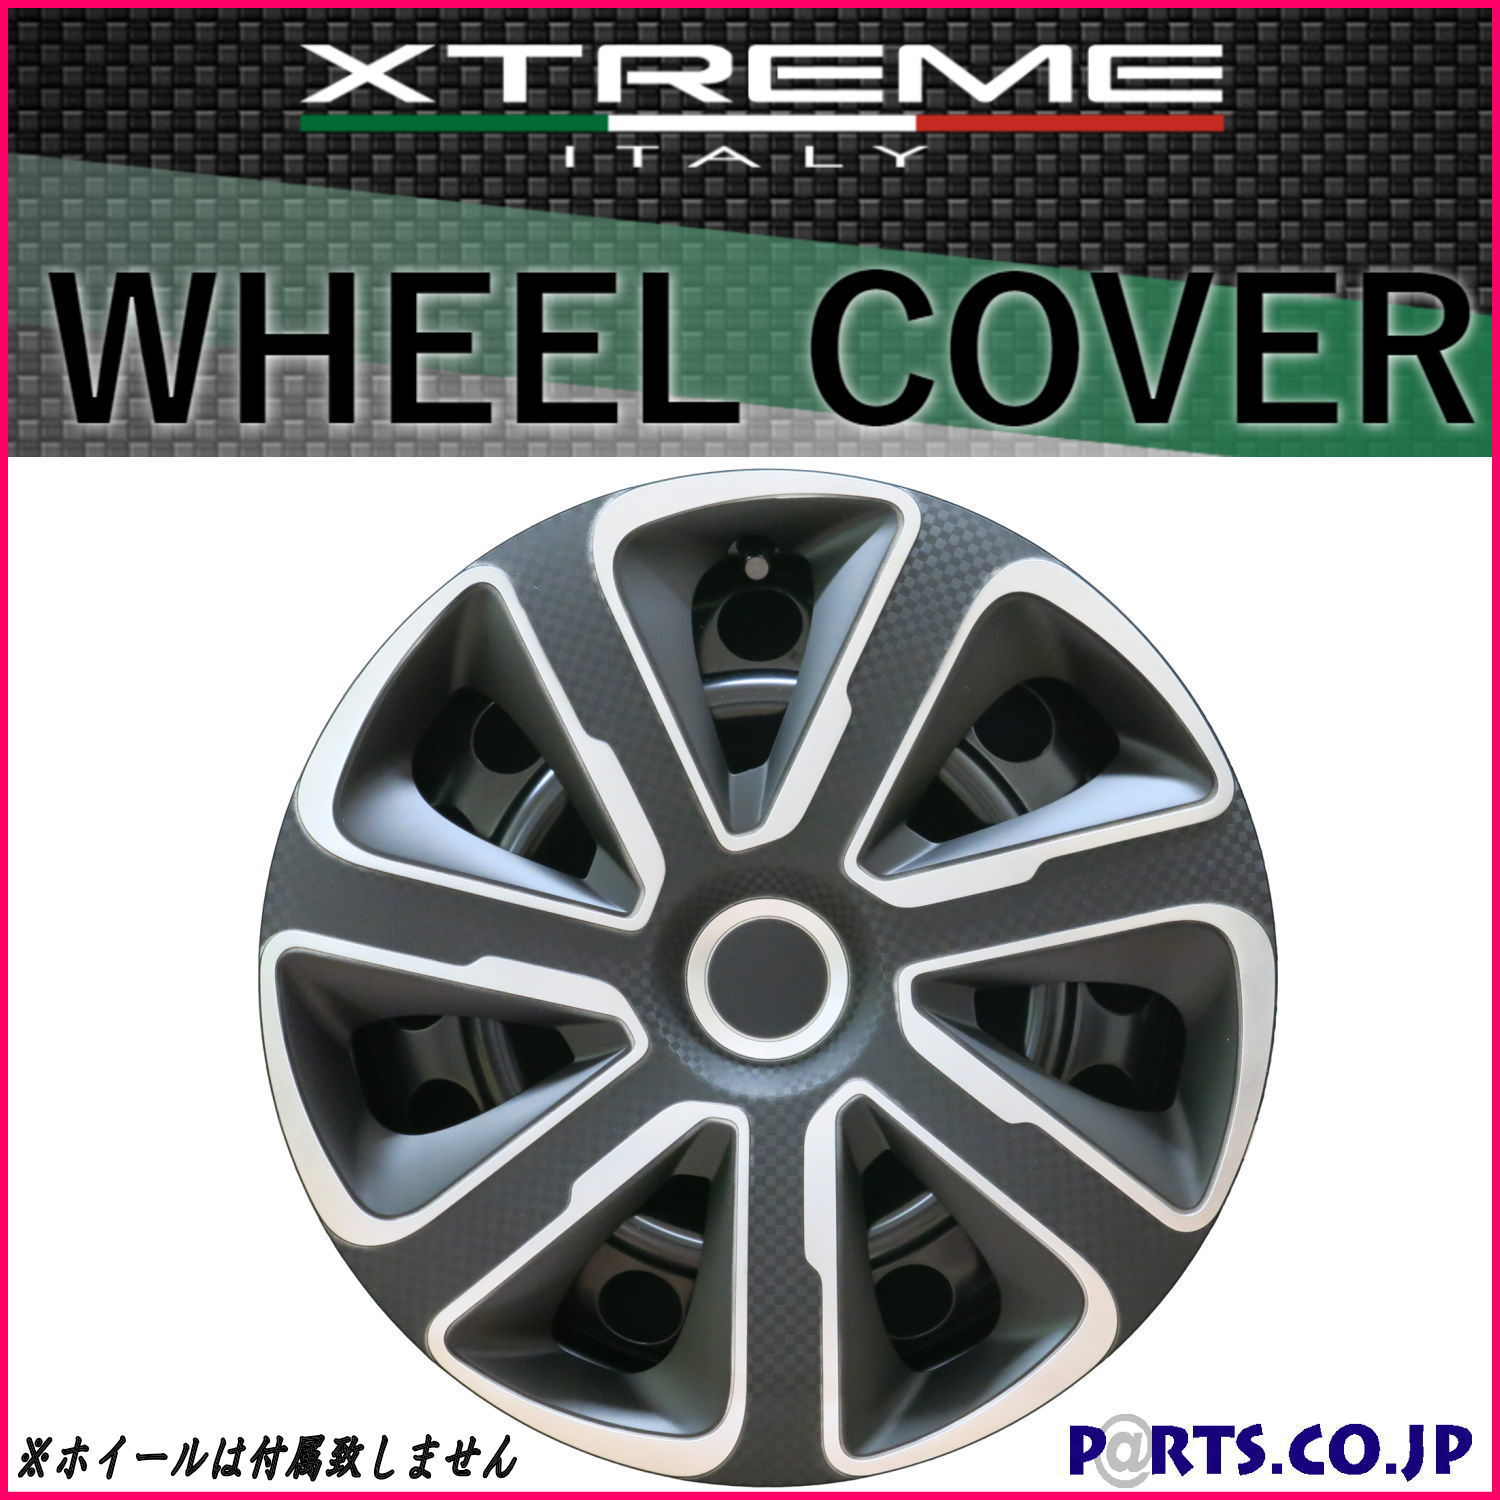 Xtreme ホイールキャップ シルバーカーボンブラック 14インチ タイヤ ホイール 交換 汎用品